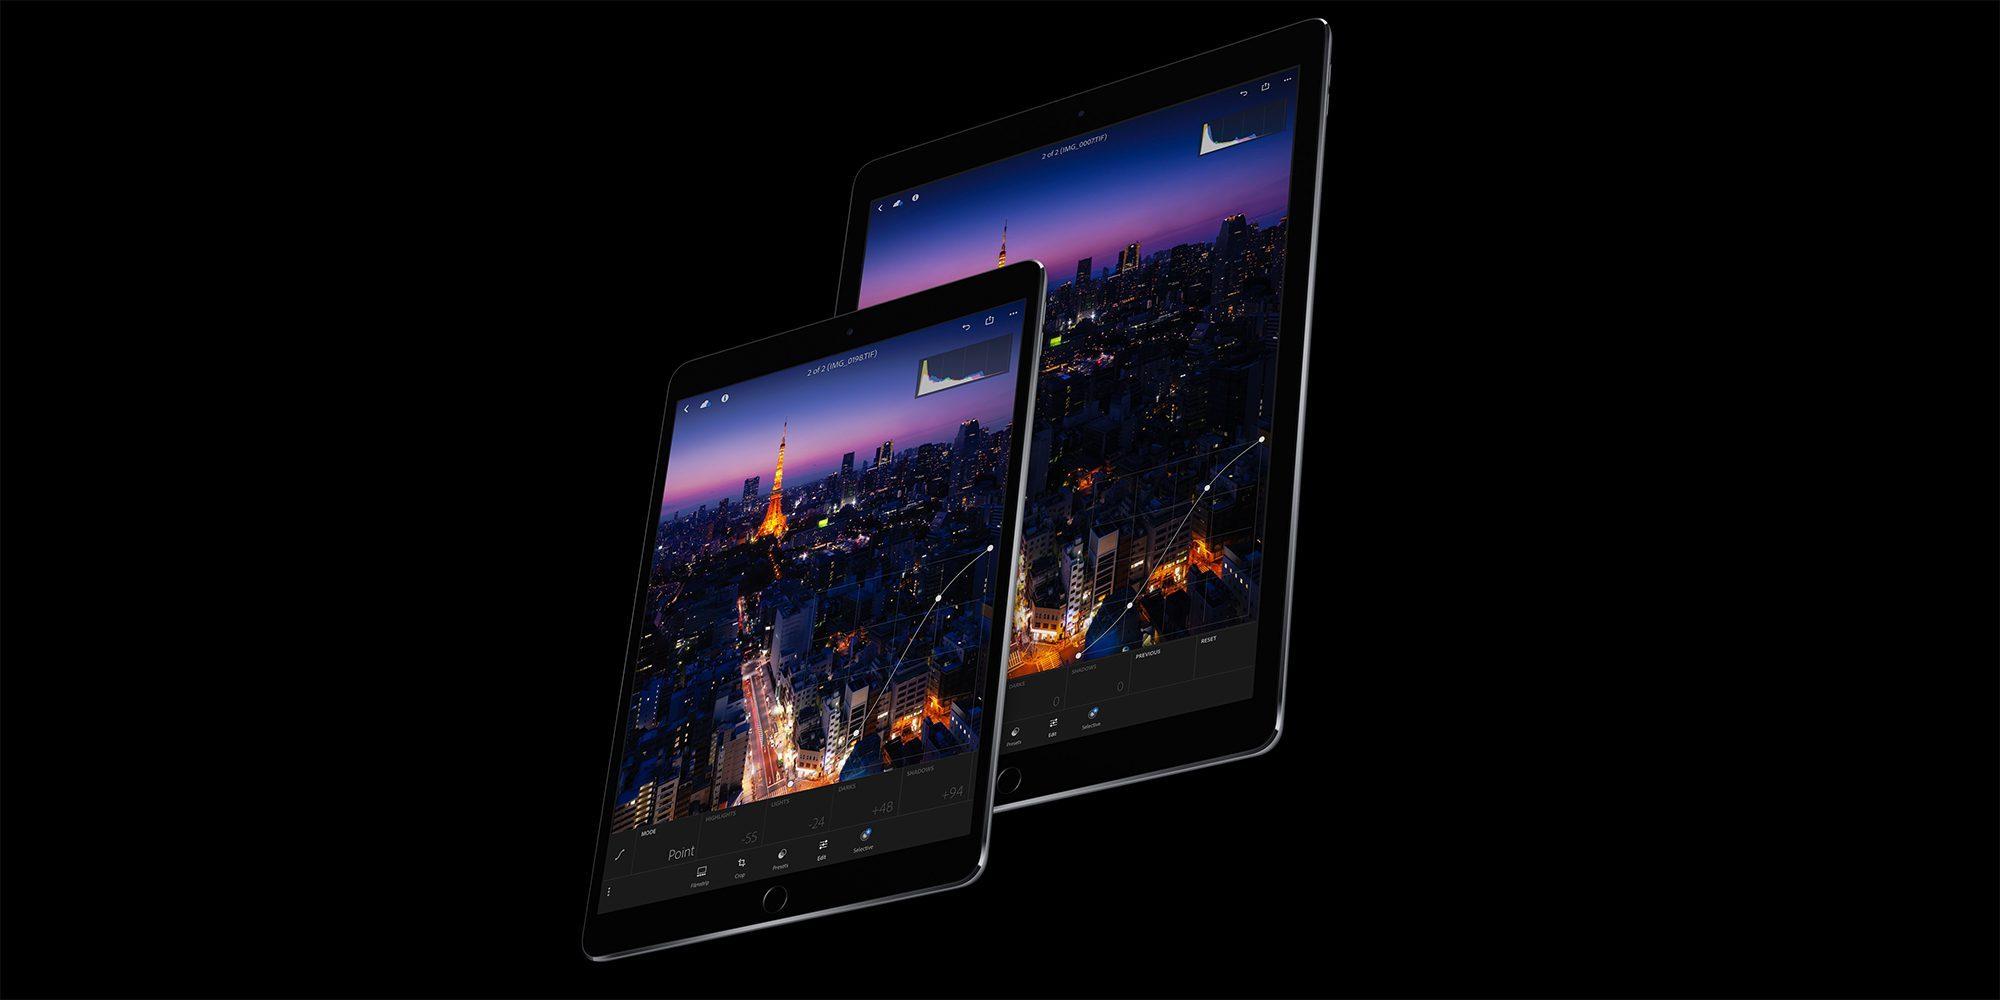 ภาพคอนเซ็ปต์ iPad Pro 2018